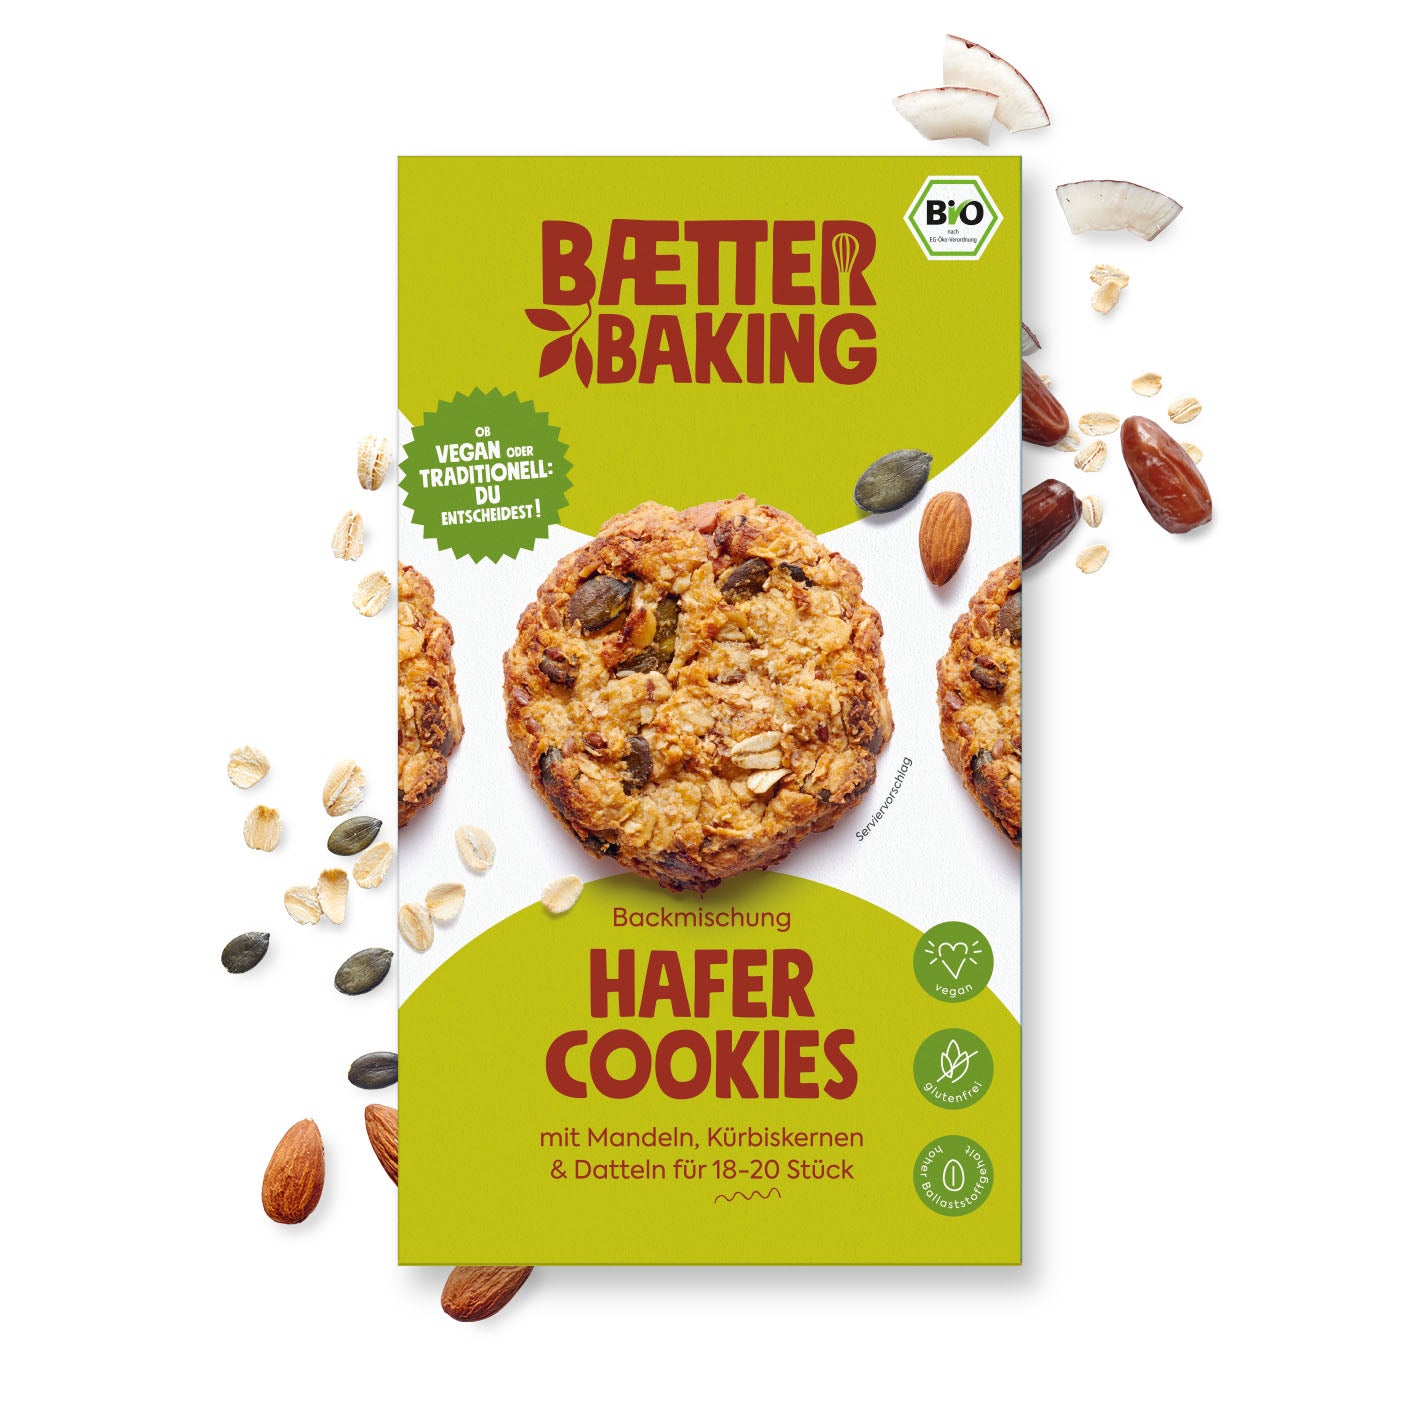 Hafer_Cookies_Backmischung_Baetter_Baking